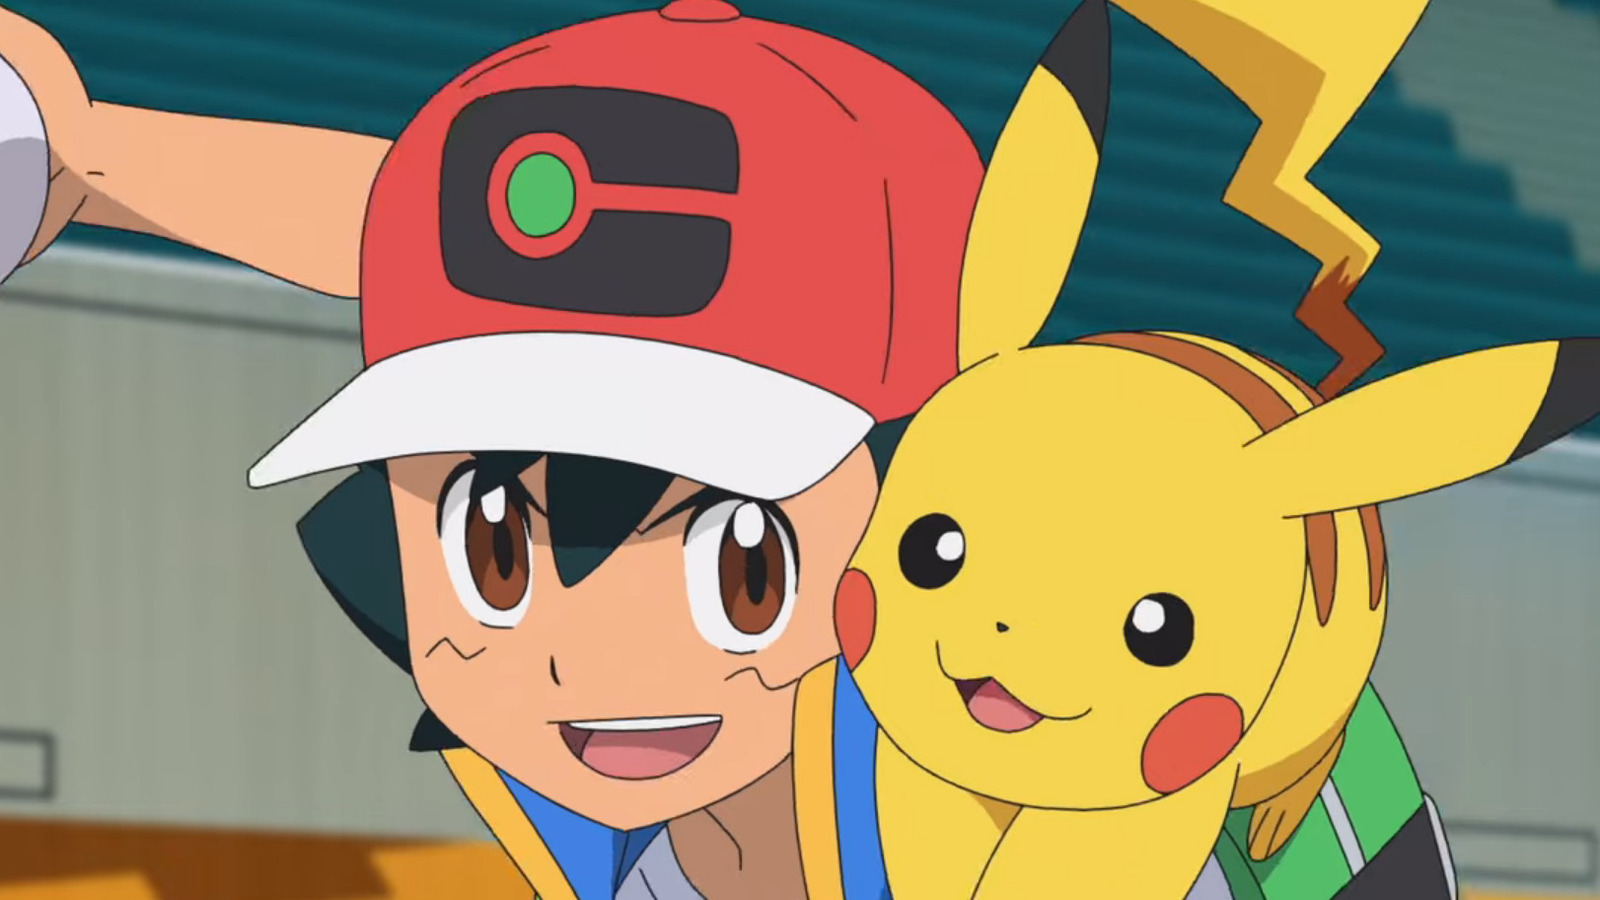 Ash Best Shiny Pokemon Team, Ash Shiny Pokemon Team Revealed